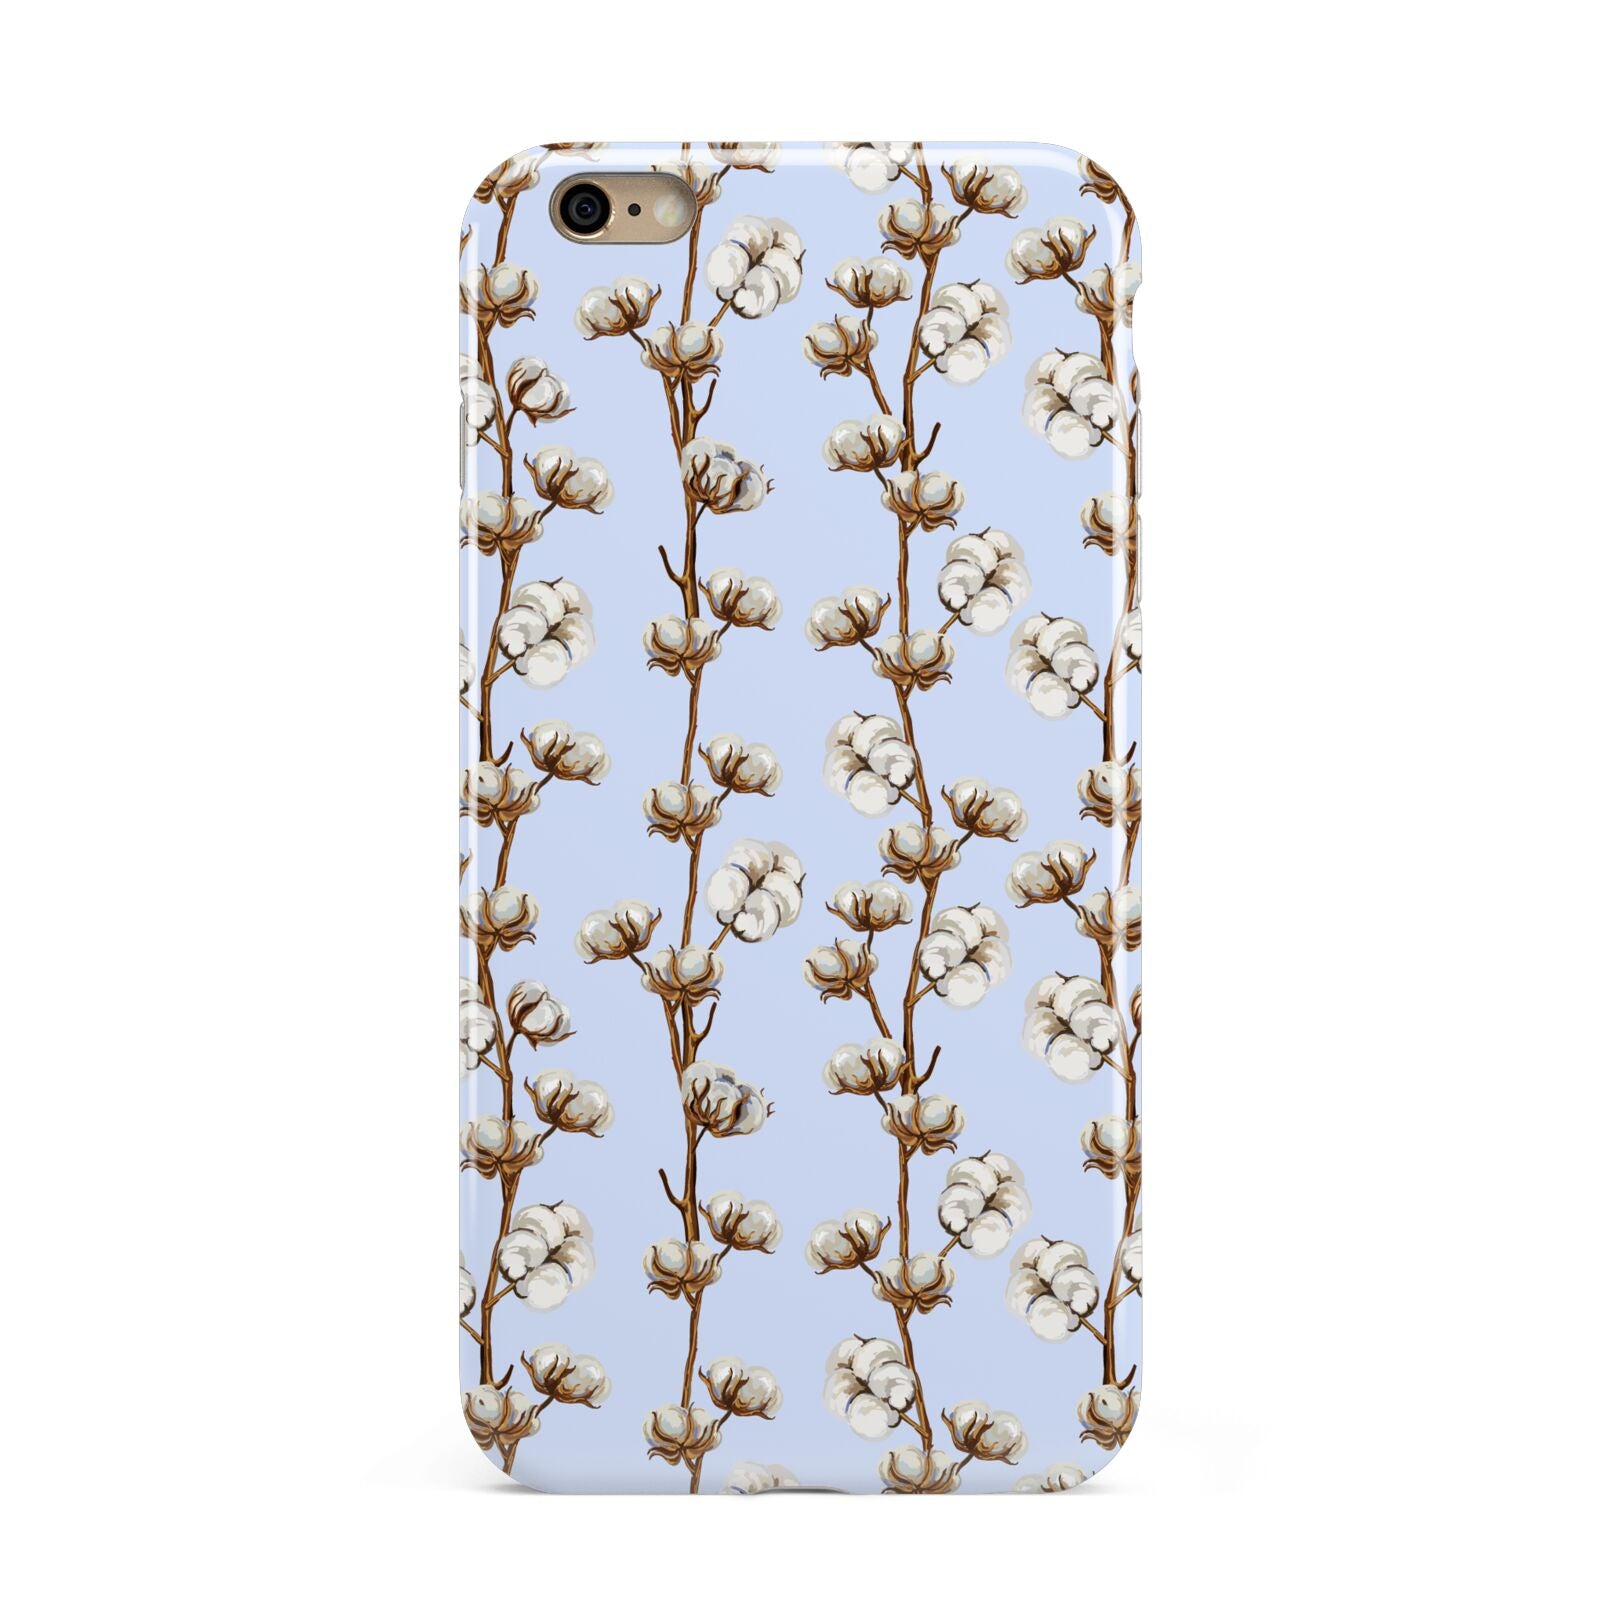 Cotton Branch Apple iPhone 6 Plus 3D Tough Case